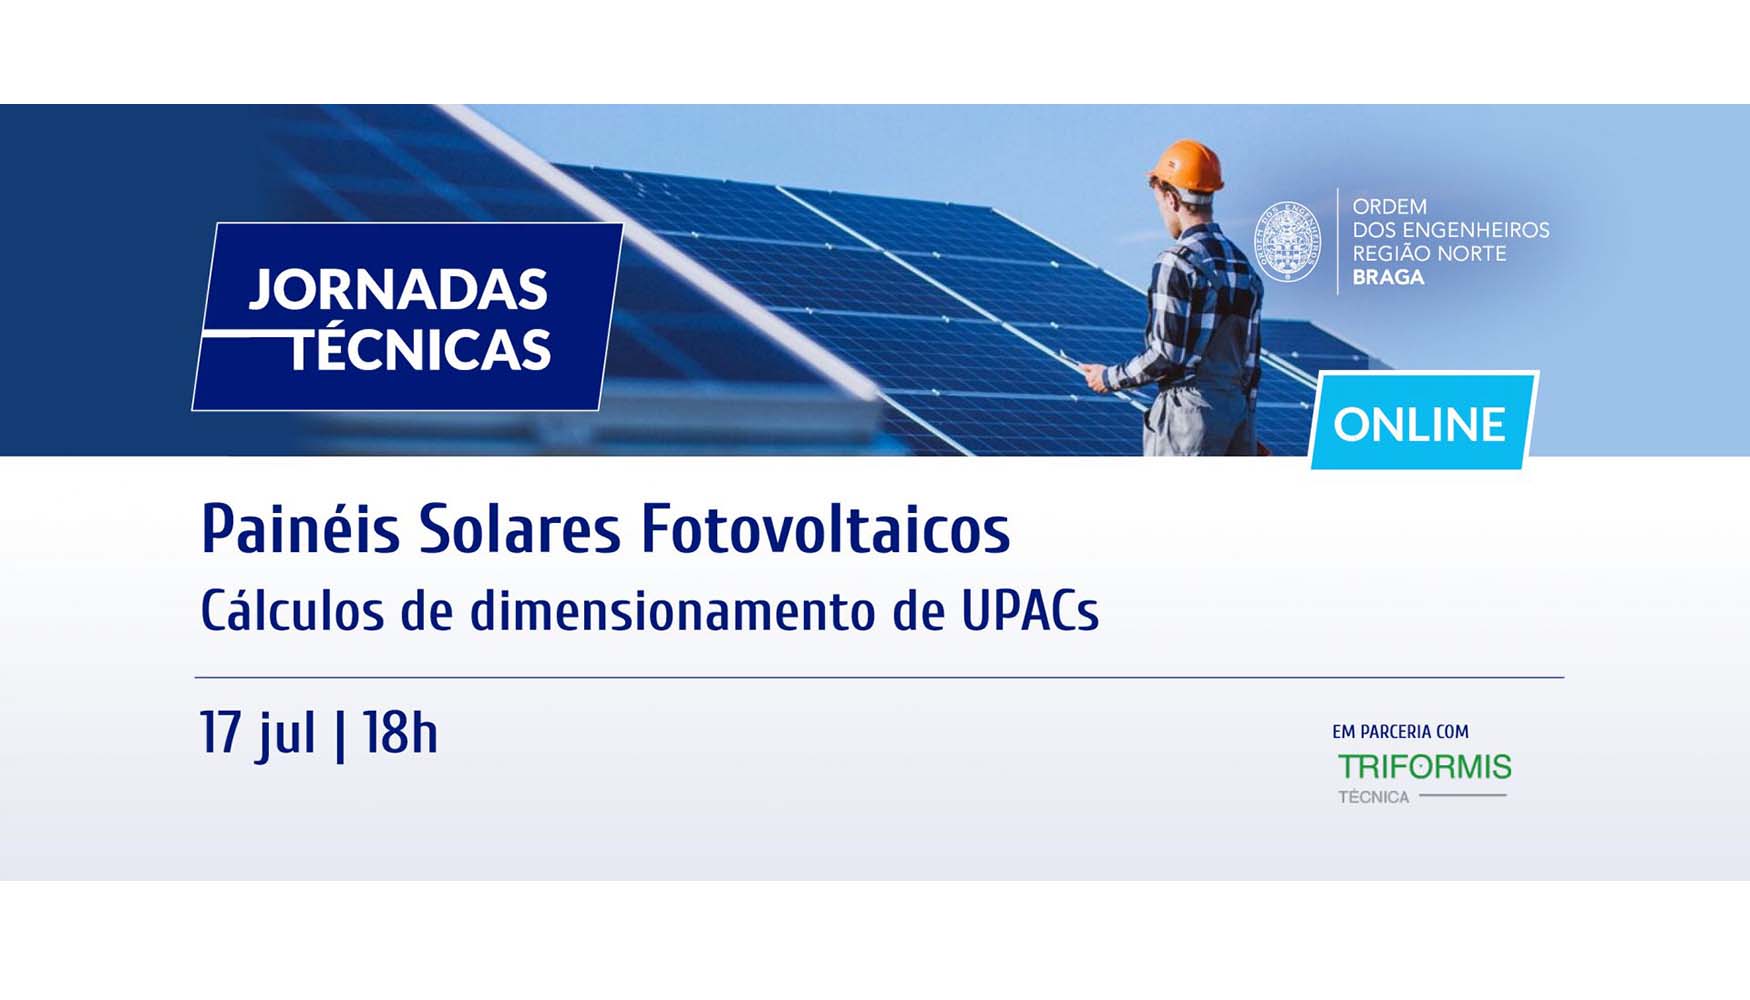 Foto de Jornadas tcnicas Painis Solares Fotovoltaicos: Clculos de dimensionamento de UPCAs